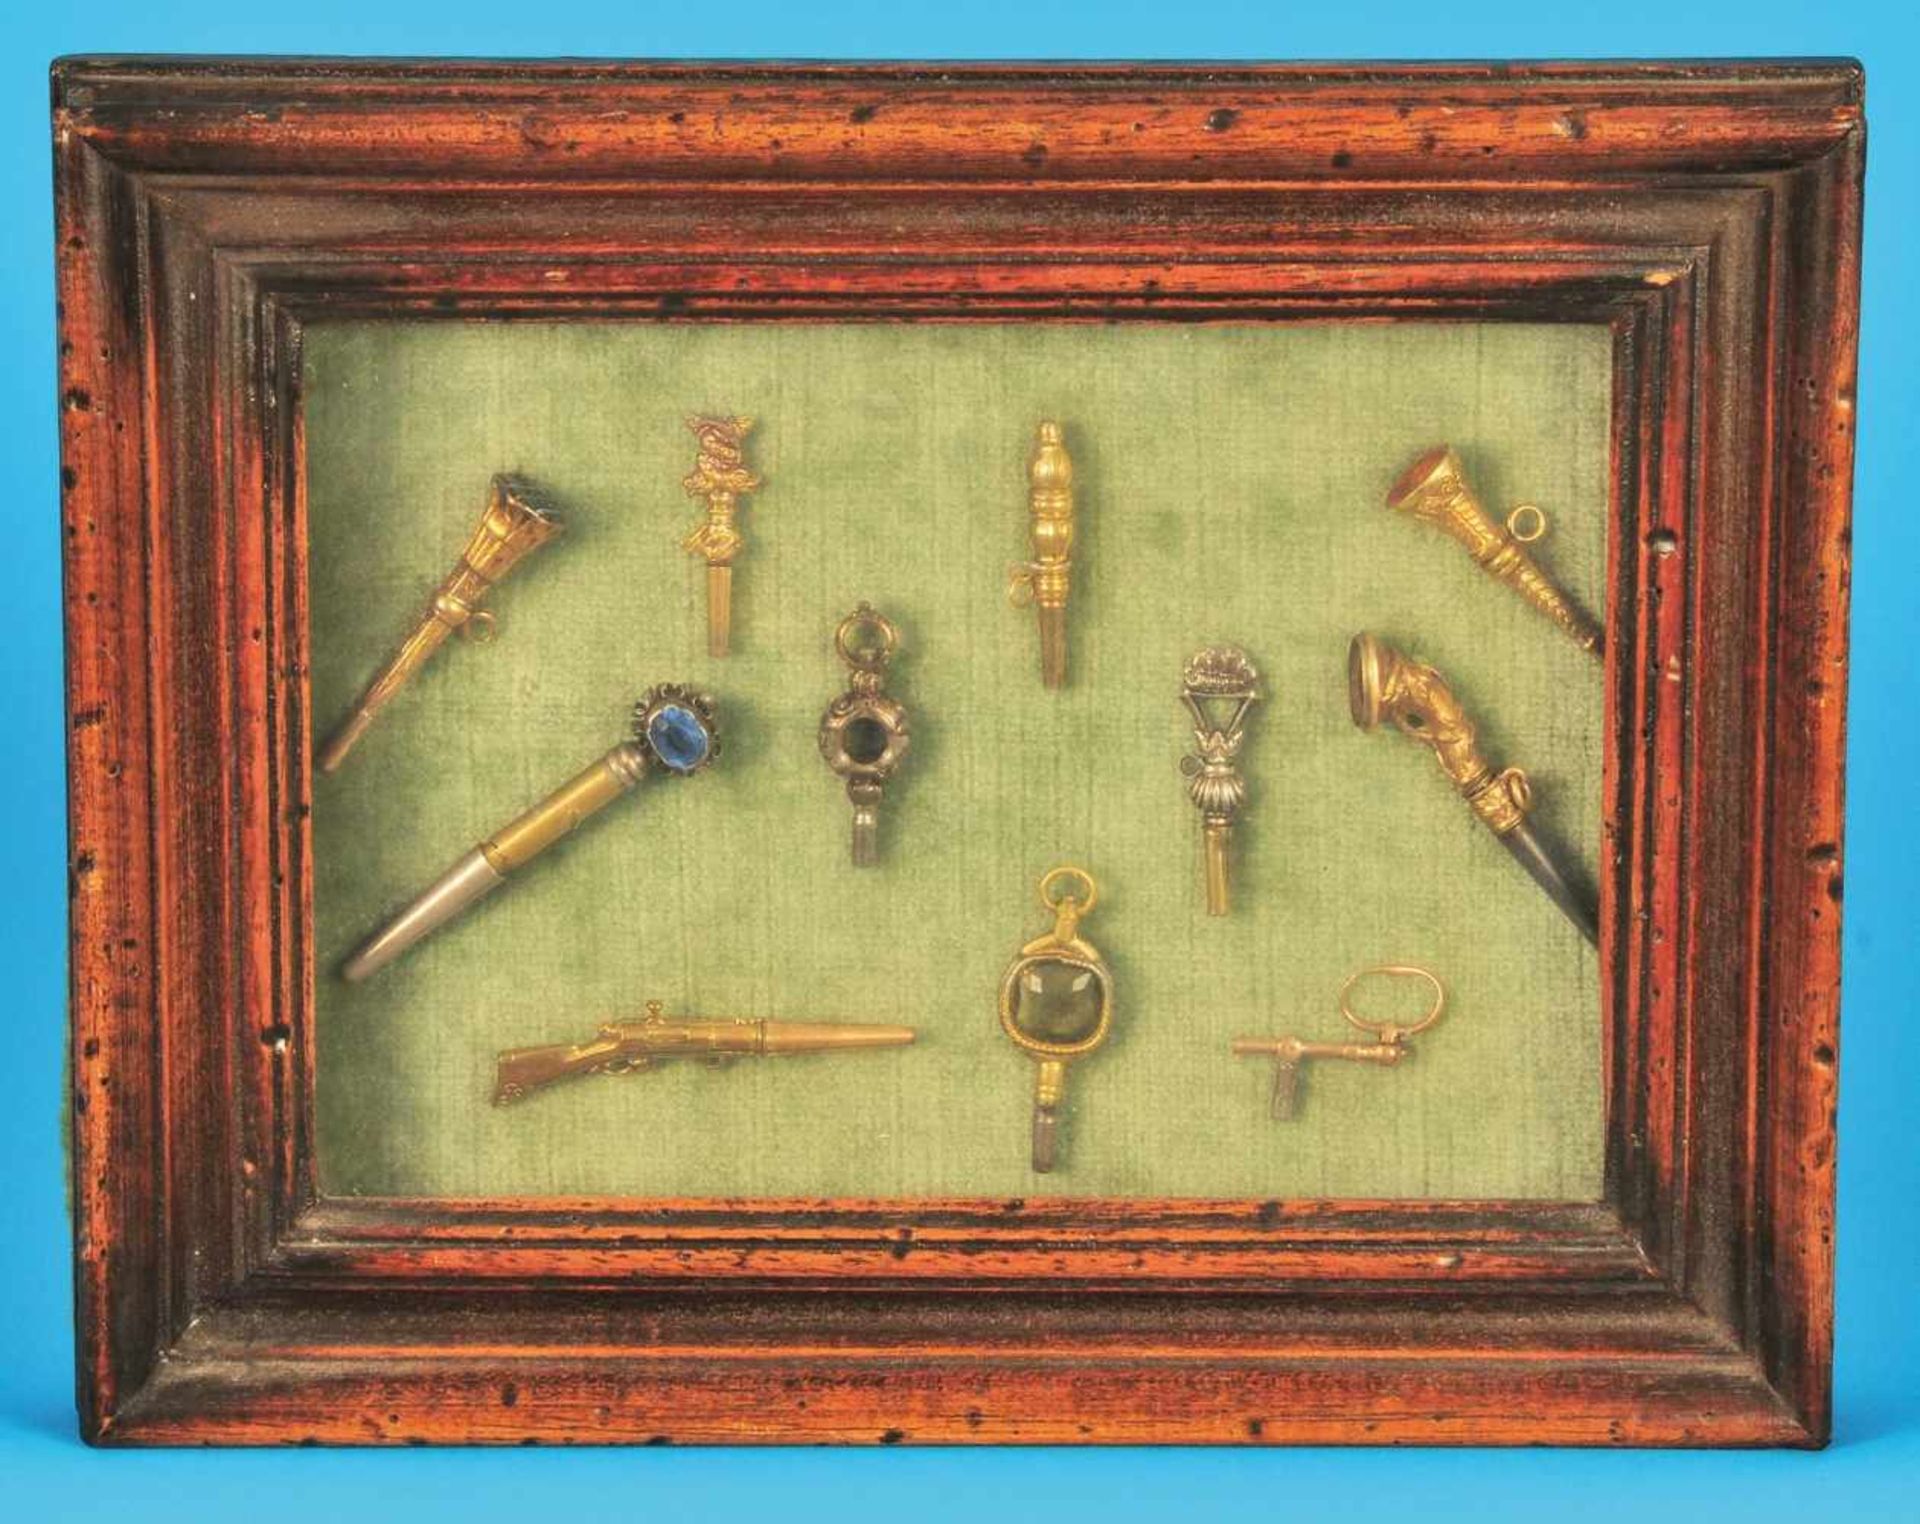 Collection with 11 pocket watch keysSammlung mit 11 Taschenuhrschlüsseln im verglasten Holzrahmen,